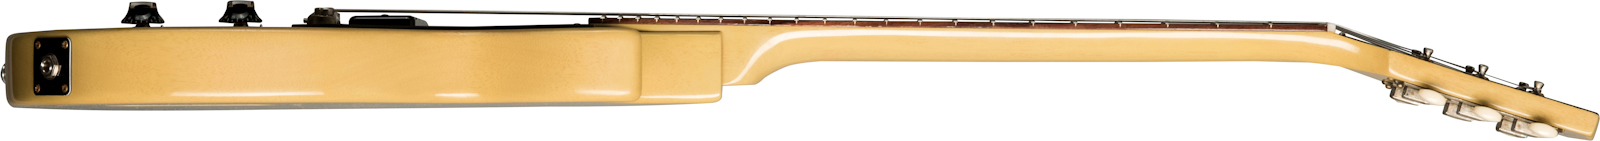 Gibson Custom Shop Les Paul Junior 1957 Single Cut Reissue P90 Ht Rw - Vos Tv Yellow - Guitare Électrique Single Cut - Variation 2